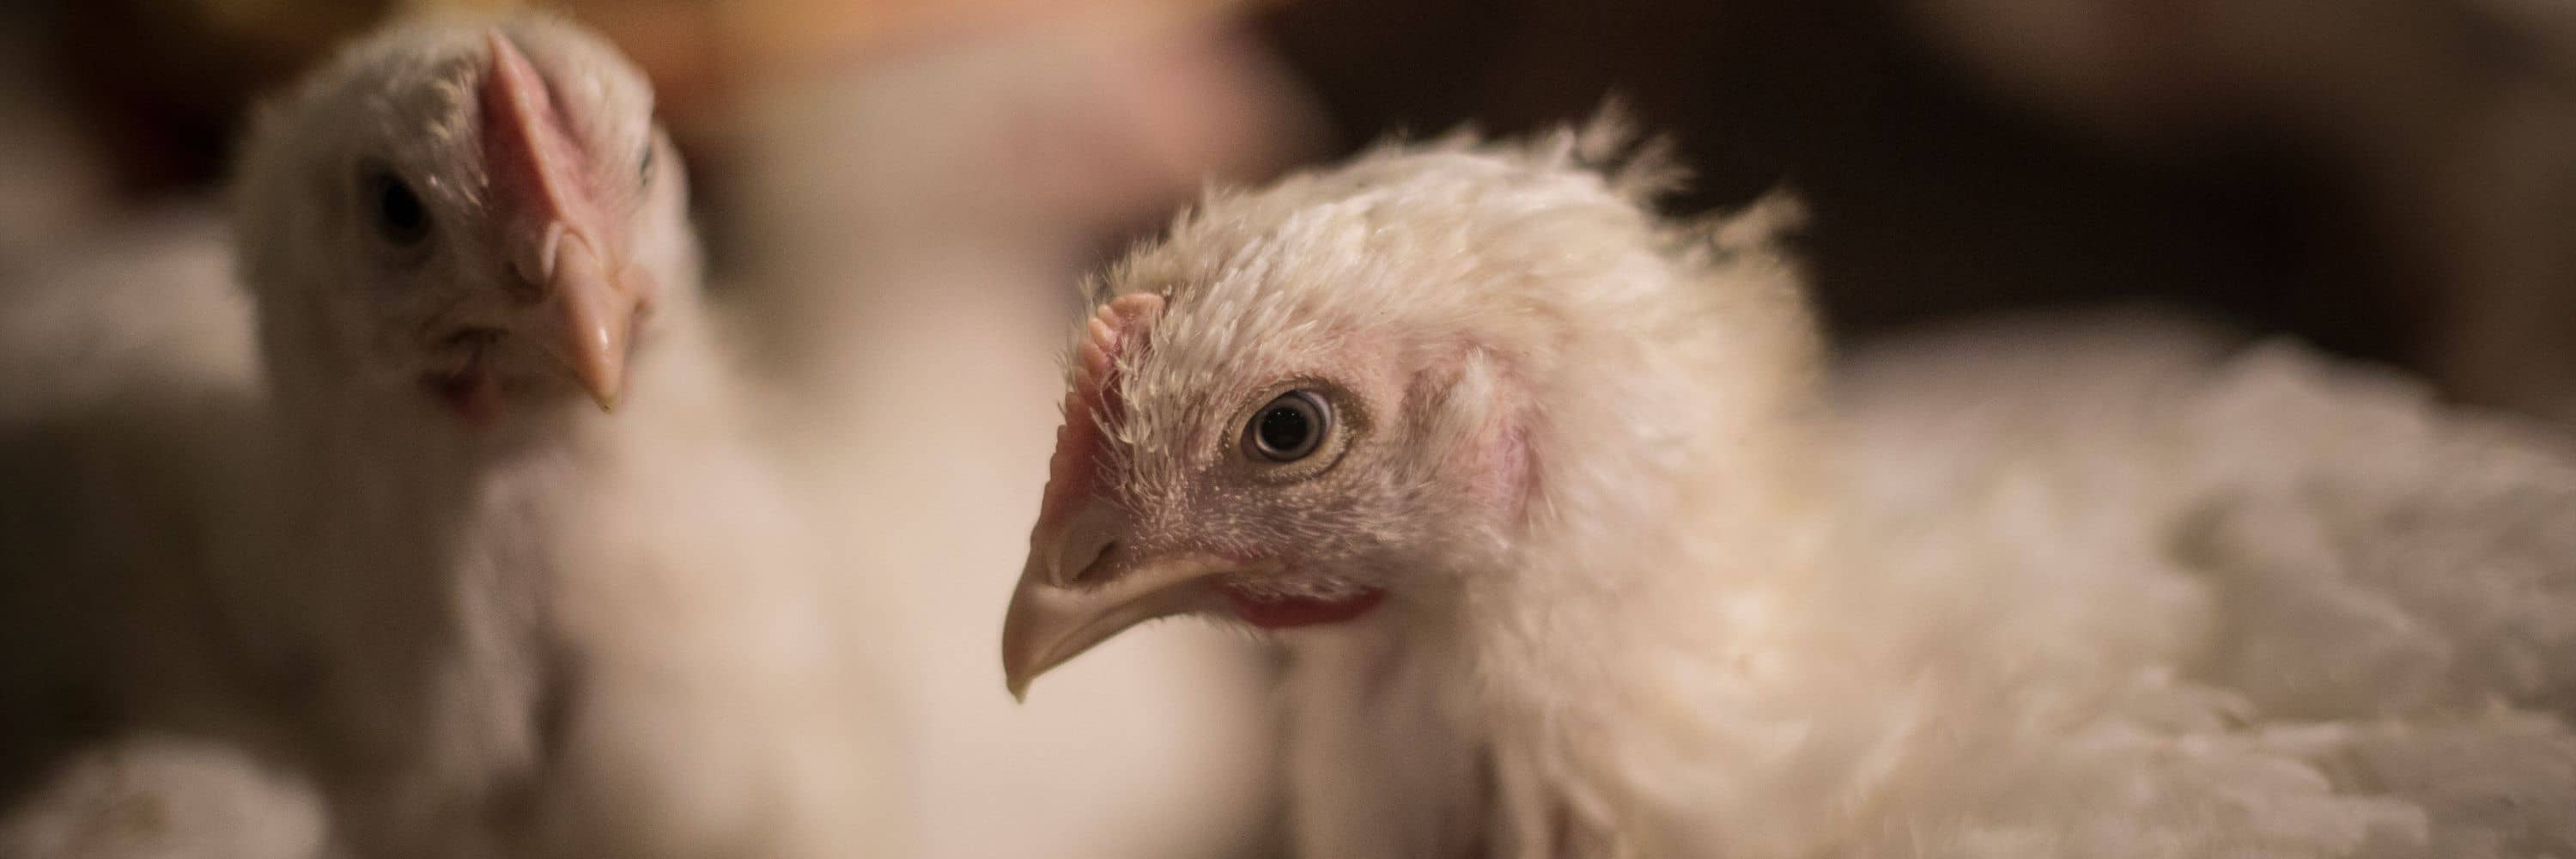 Pollo en granja industrial de España. Imagen de investigación de Igualdad Animal.